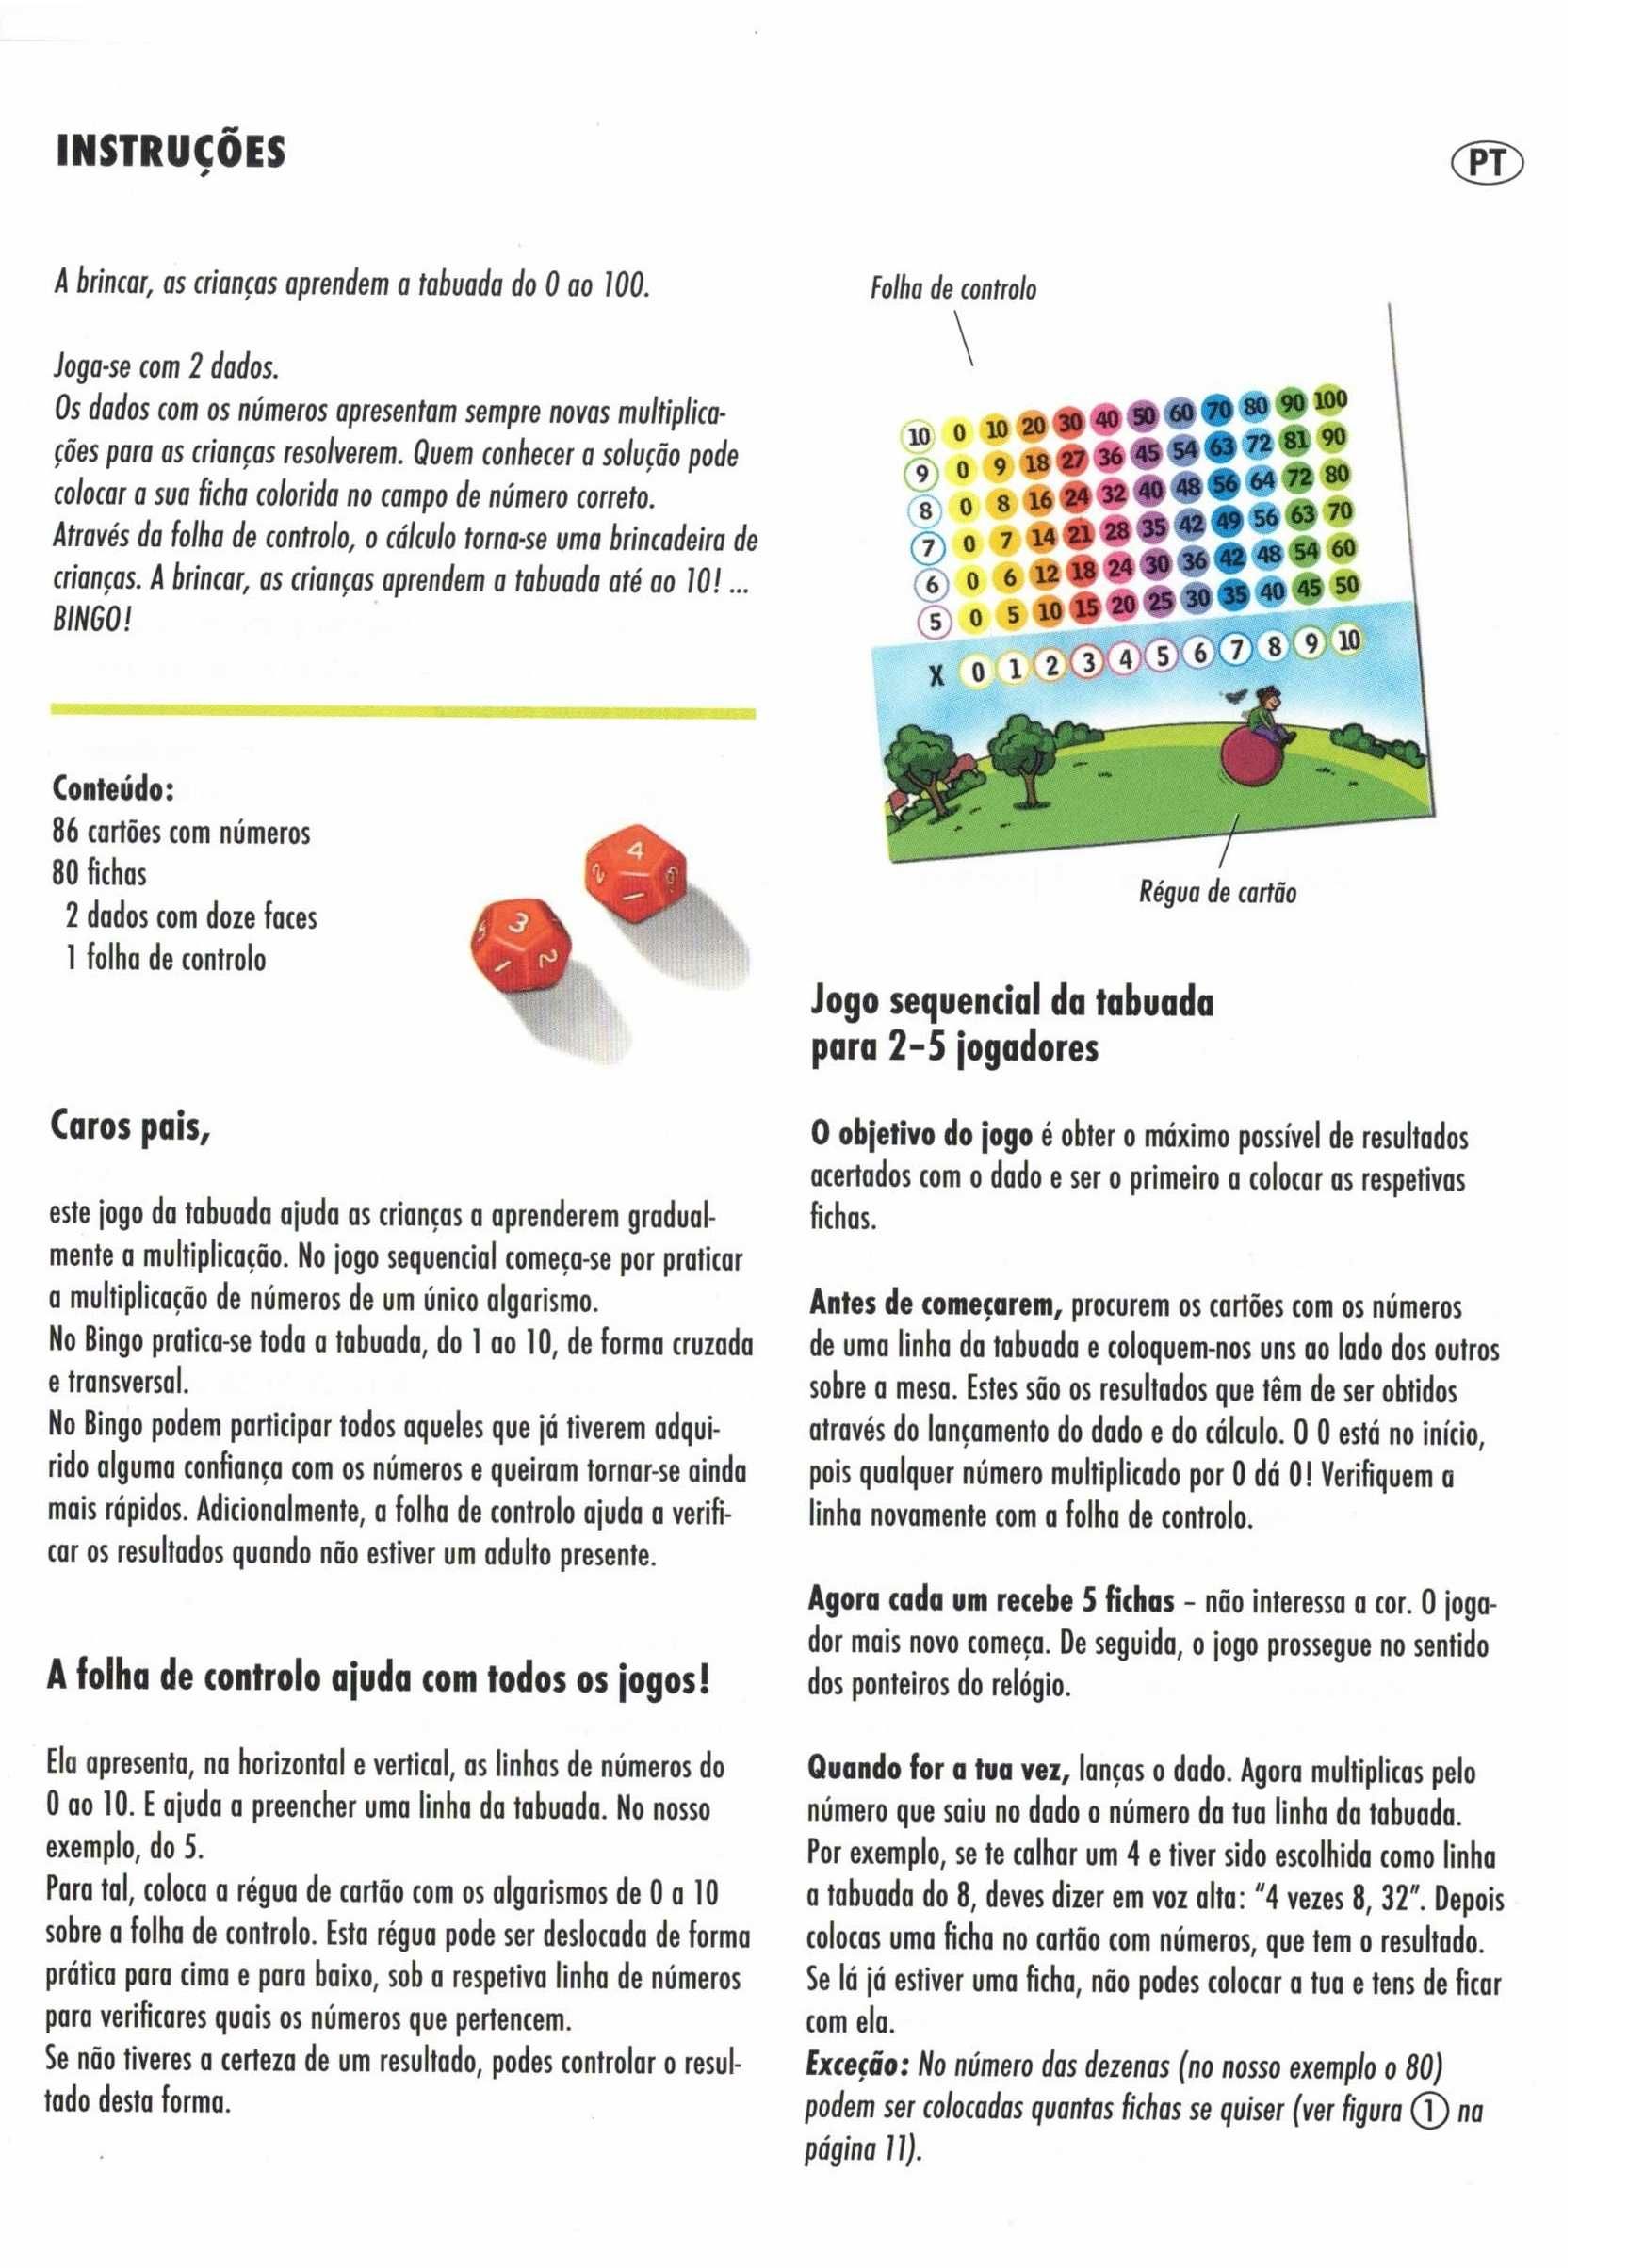 Bingo de números da tabuada (F.X. Schmid) instruções em português)